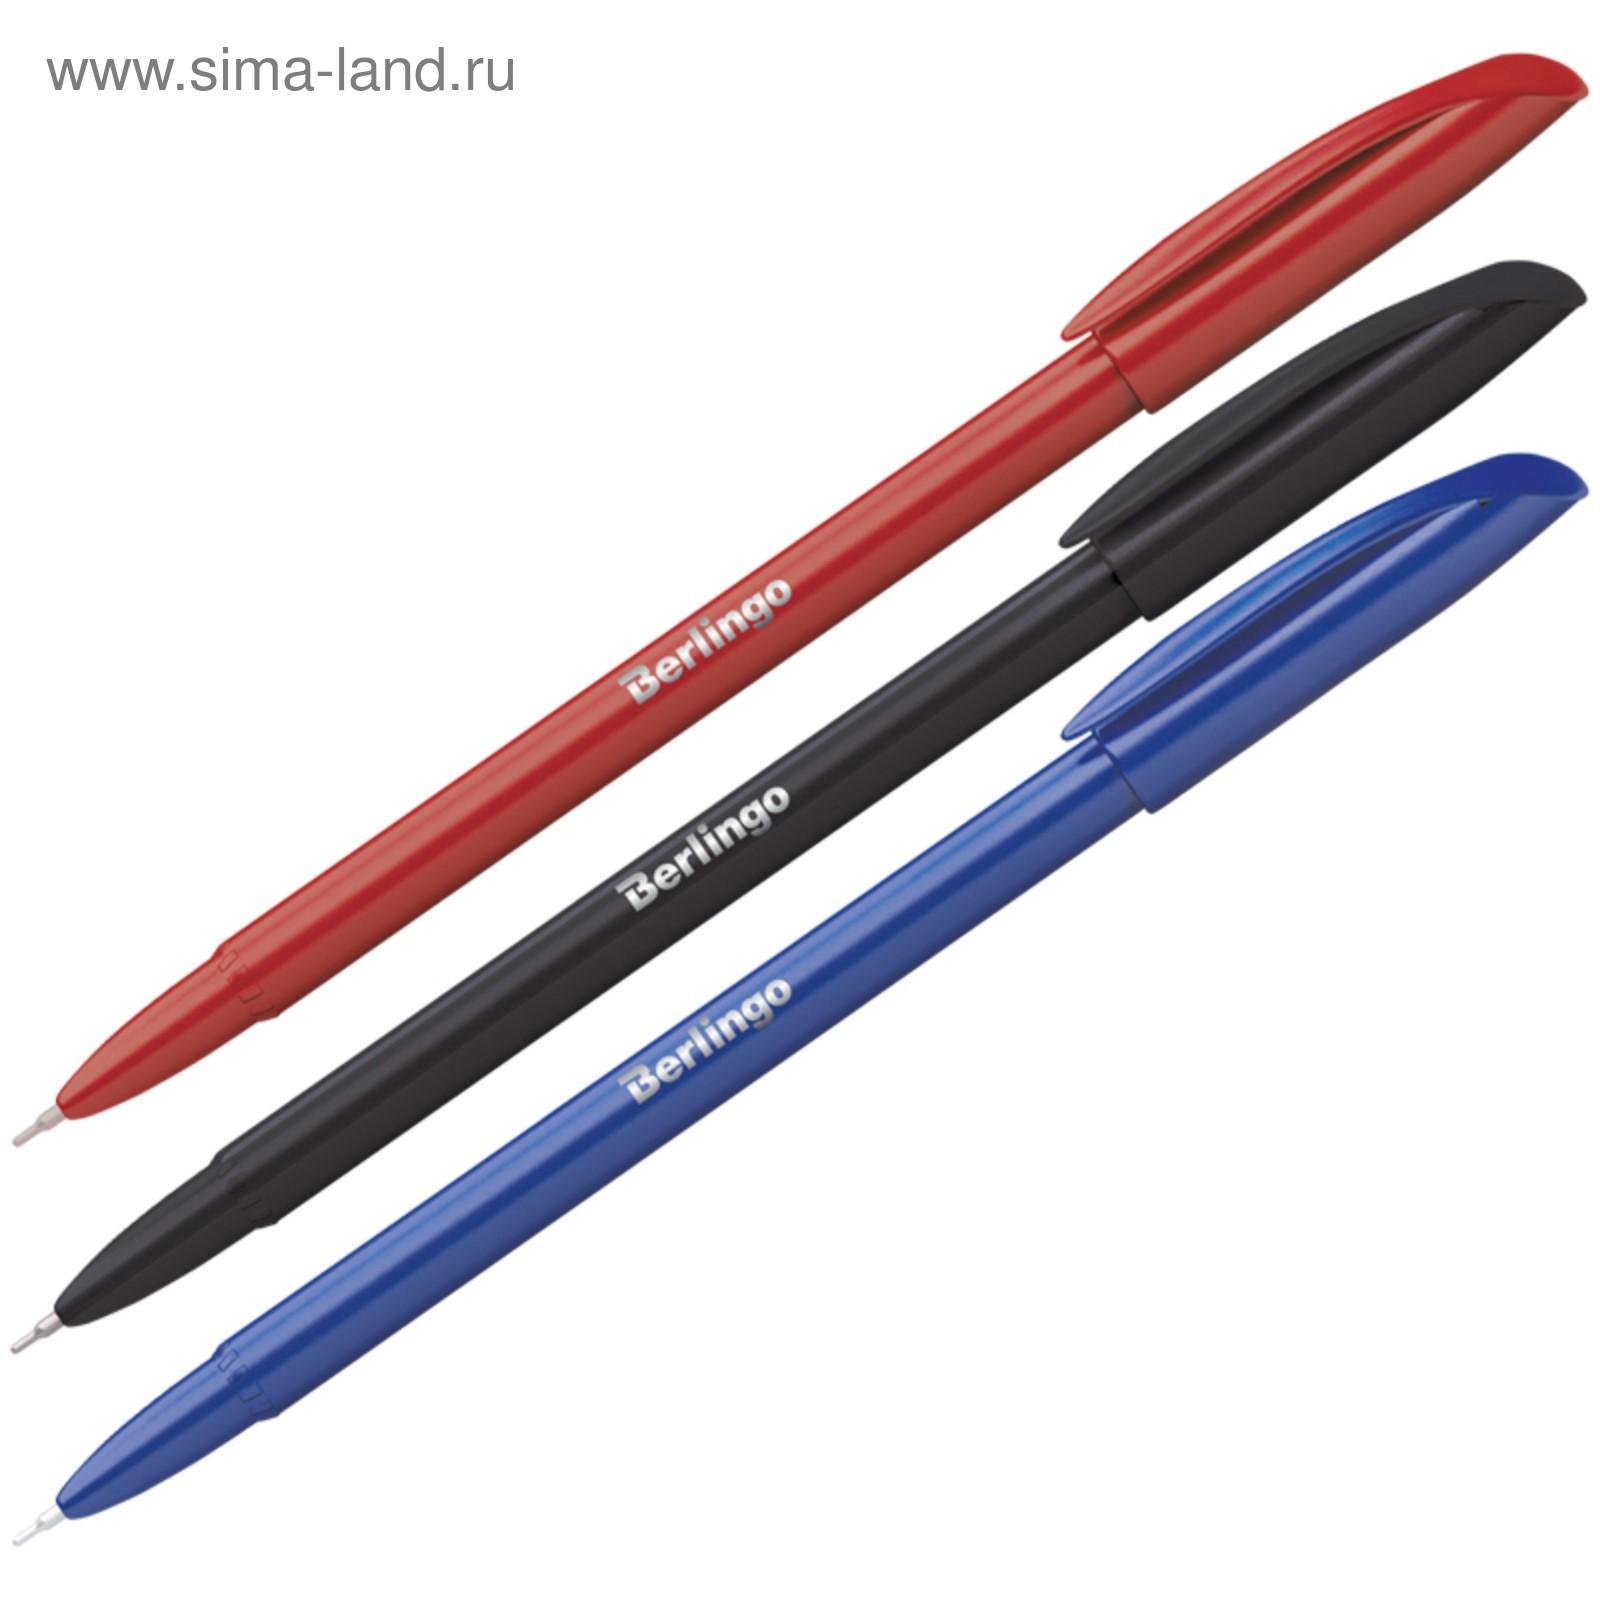 Ручка шариковая 0.7 мм, Metallic, чернила синие